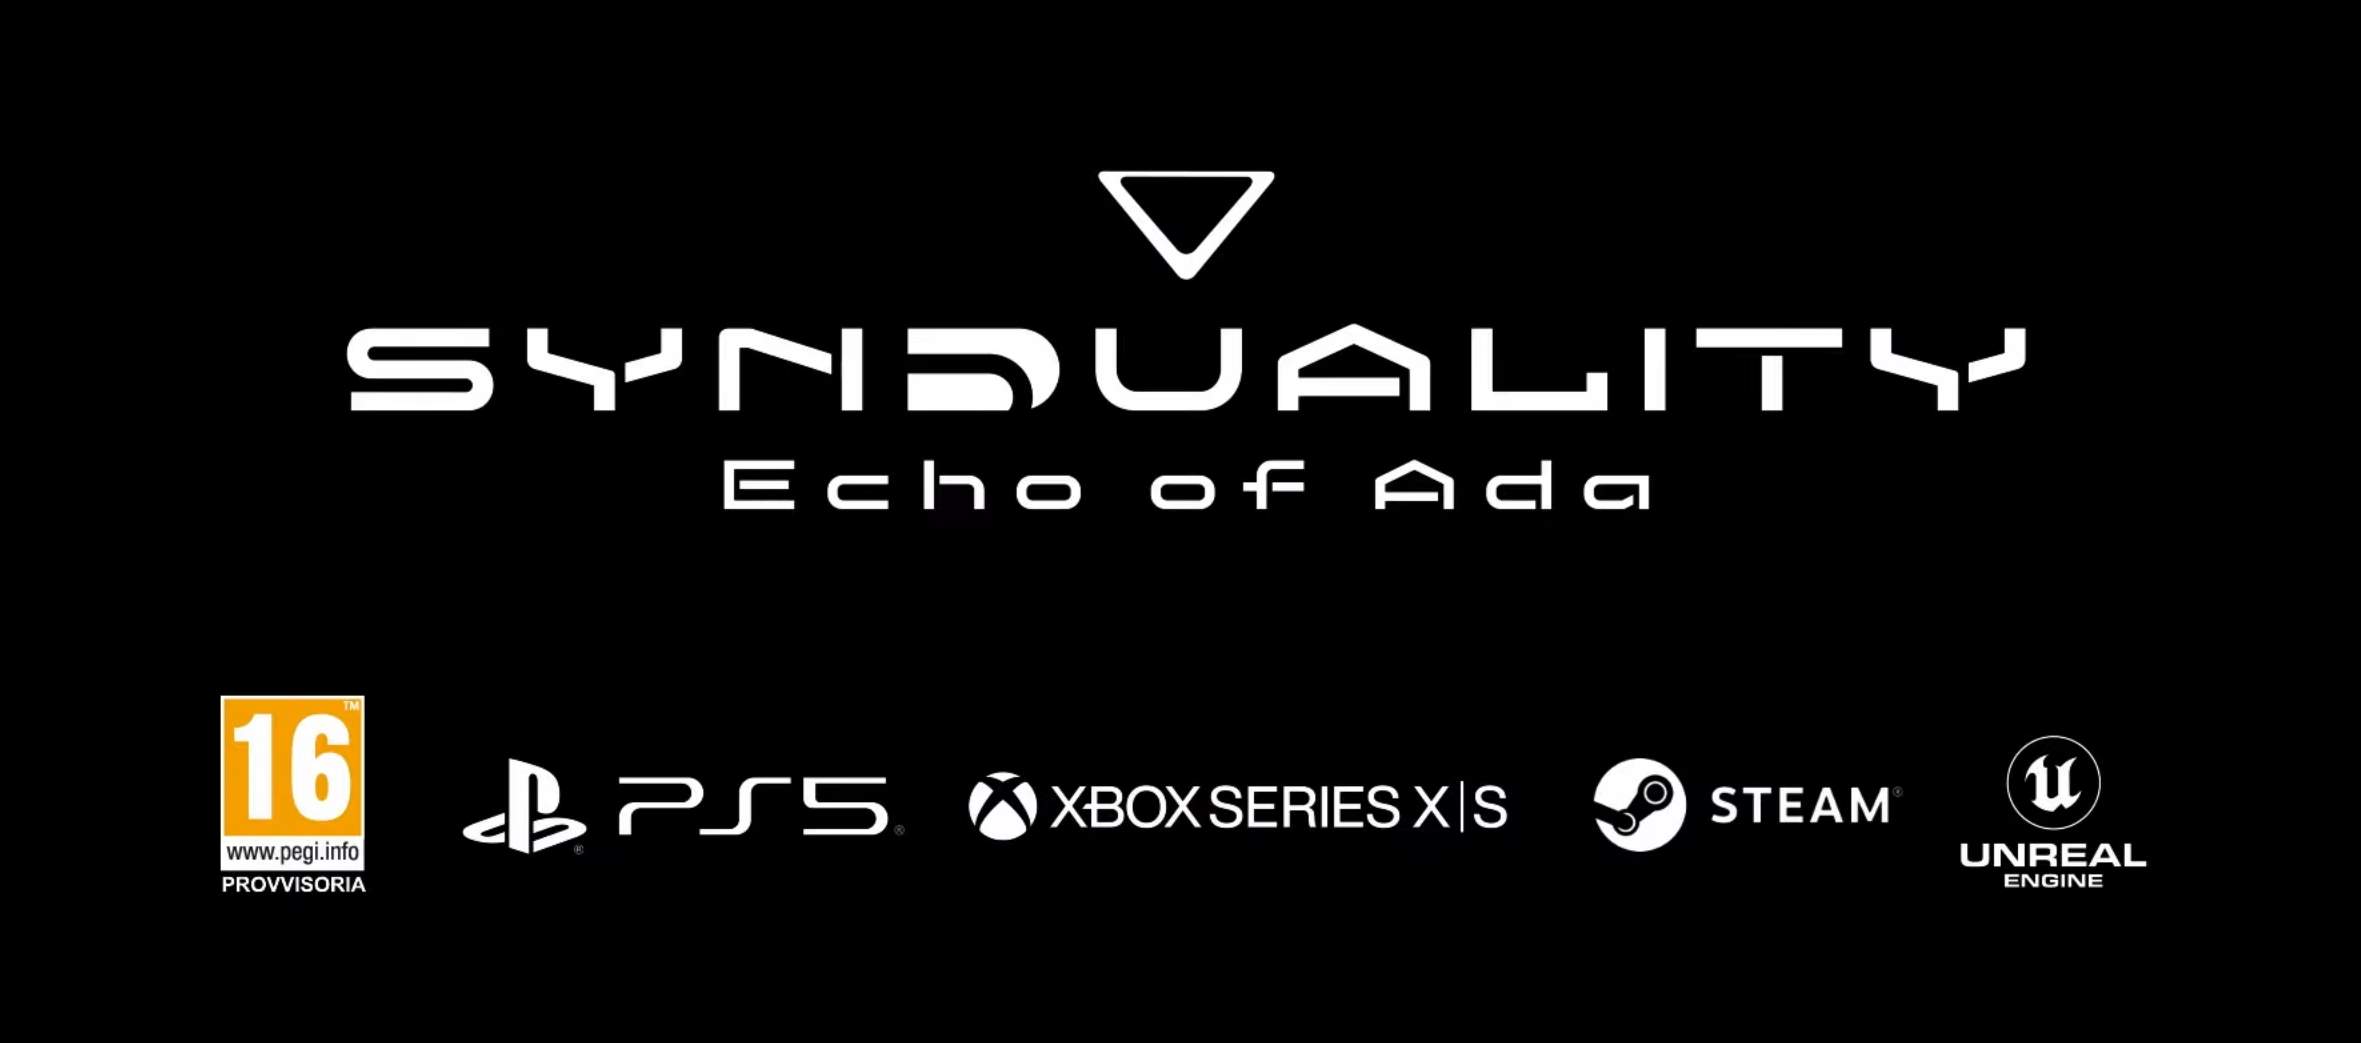 SYNDUALITY Echo of Ada la personalizzazione in un nuovo trailer